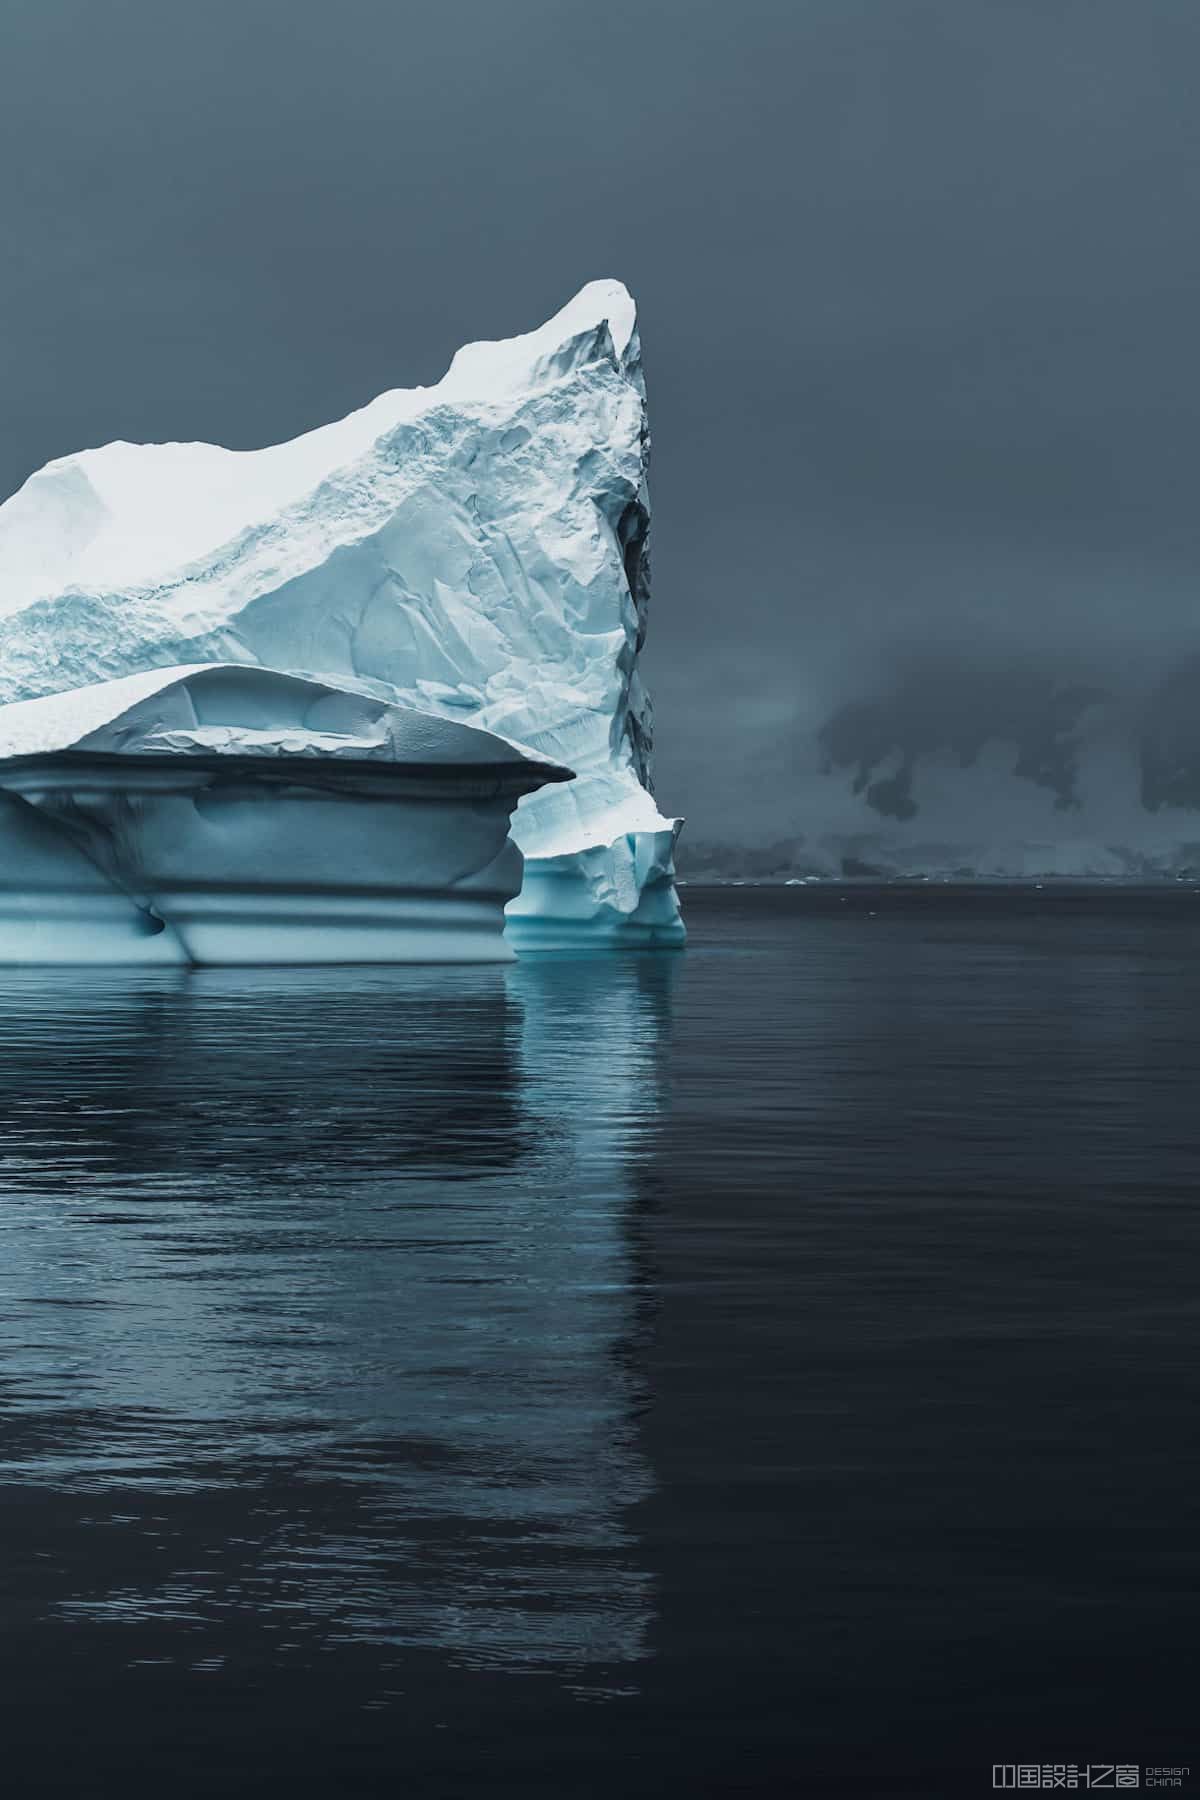 Landscape Photos of Antarctica by Jan Erik Waider